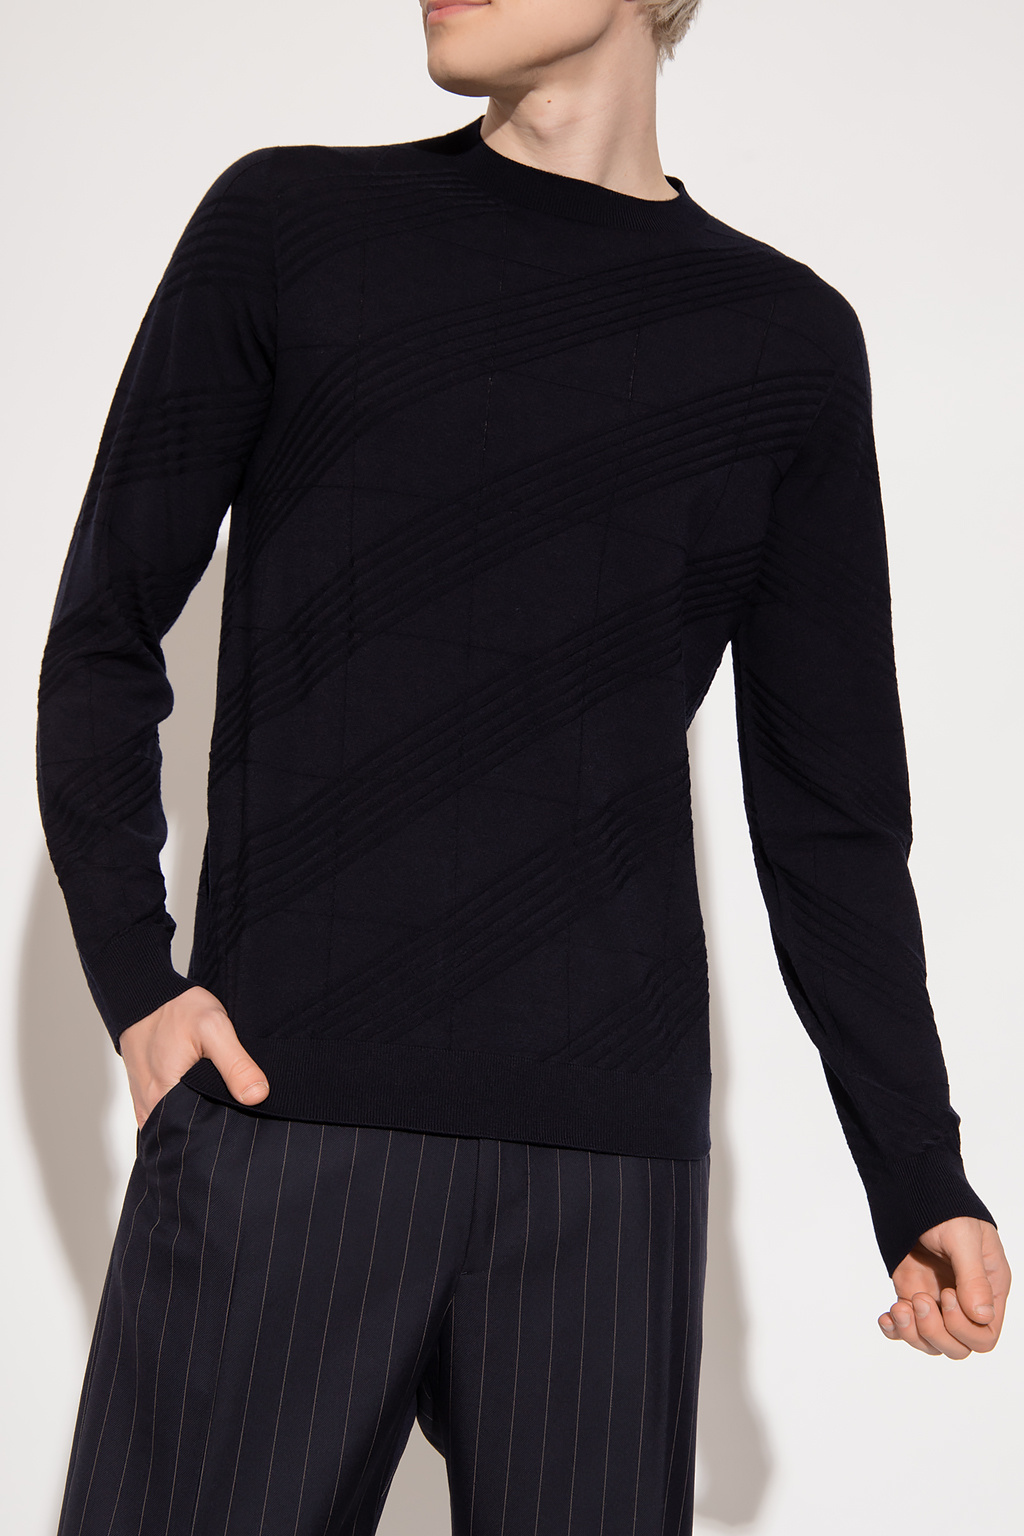 Giorgio Orange armani Wool sweater